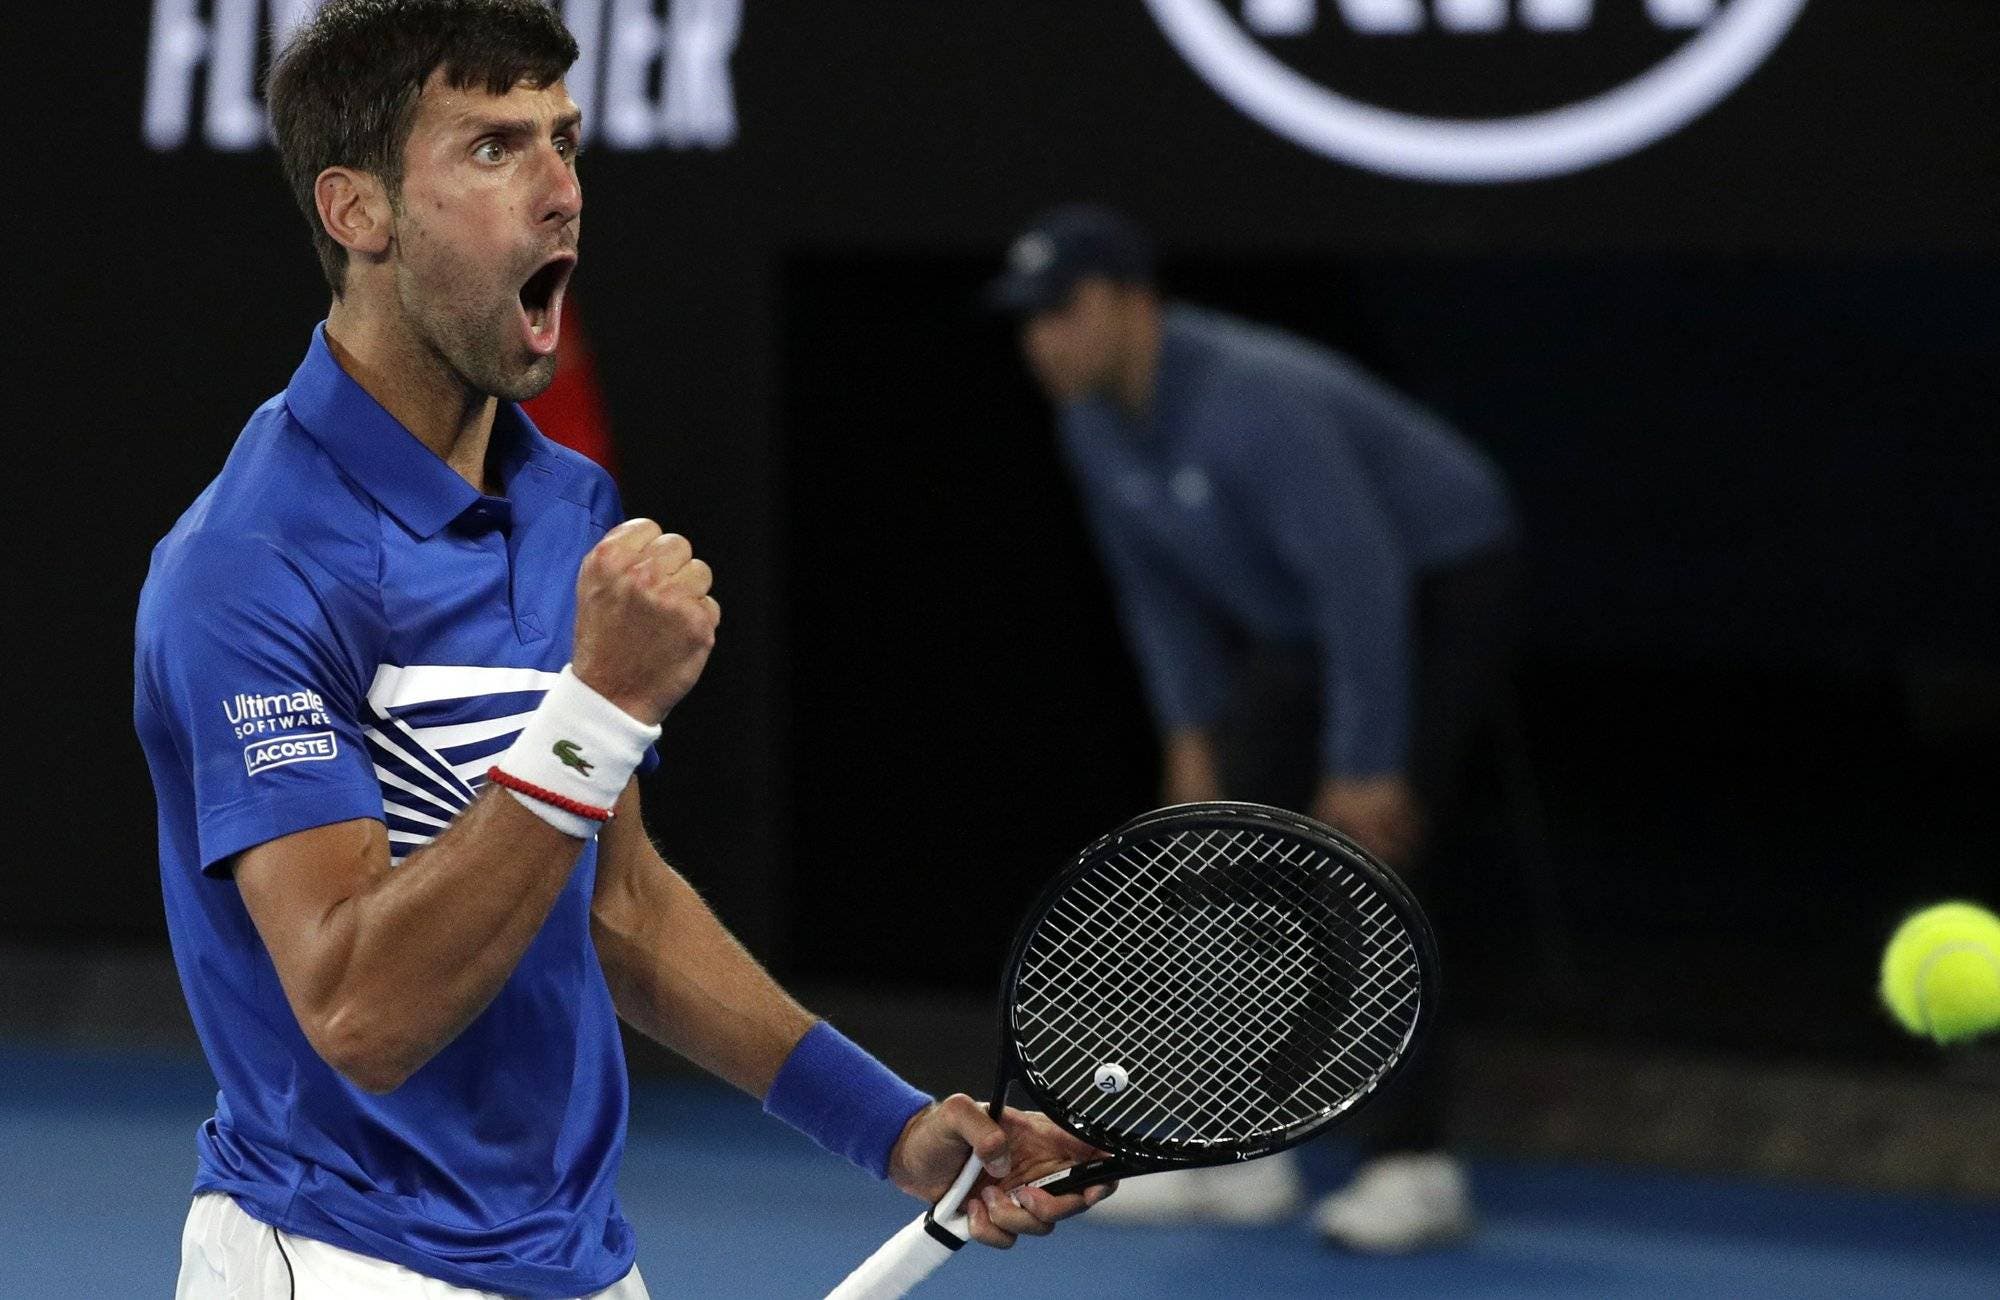 Djokovic arrolla a Nadal y gana su 7mo Abierto de Australia